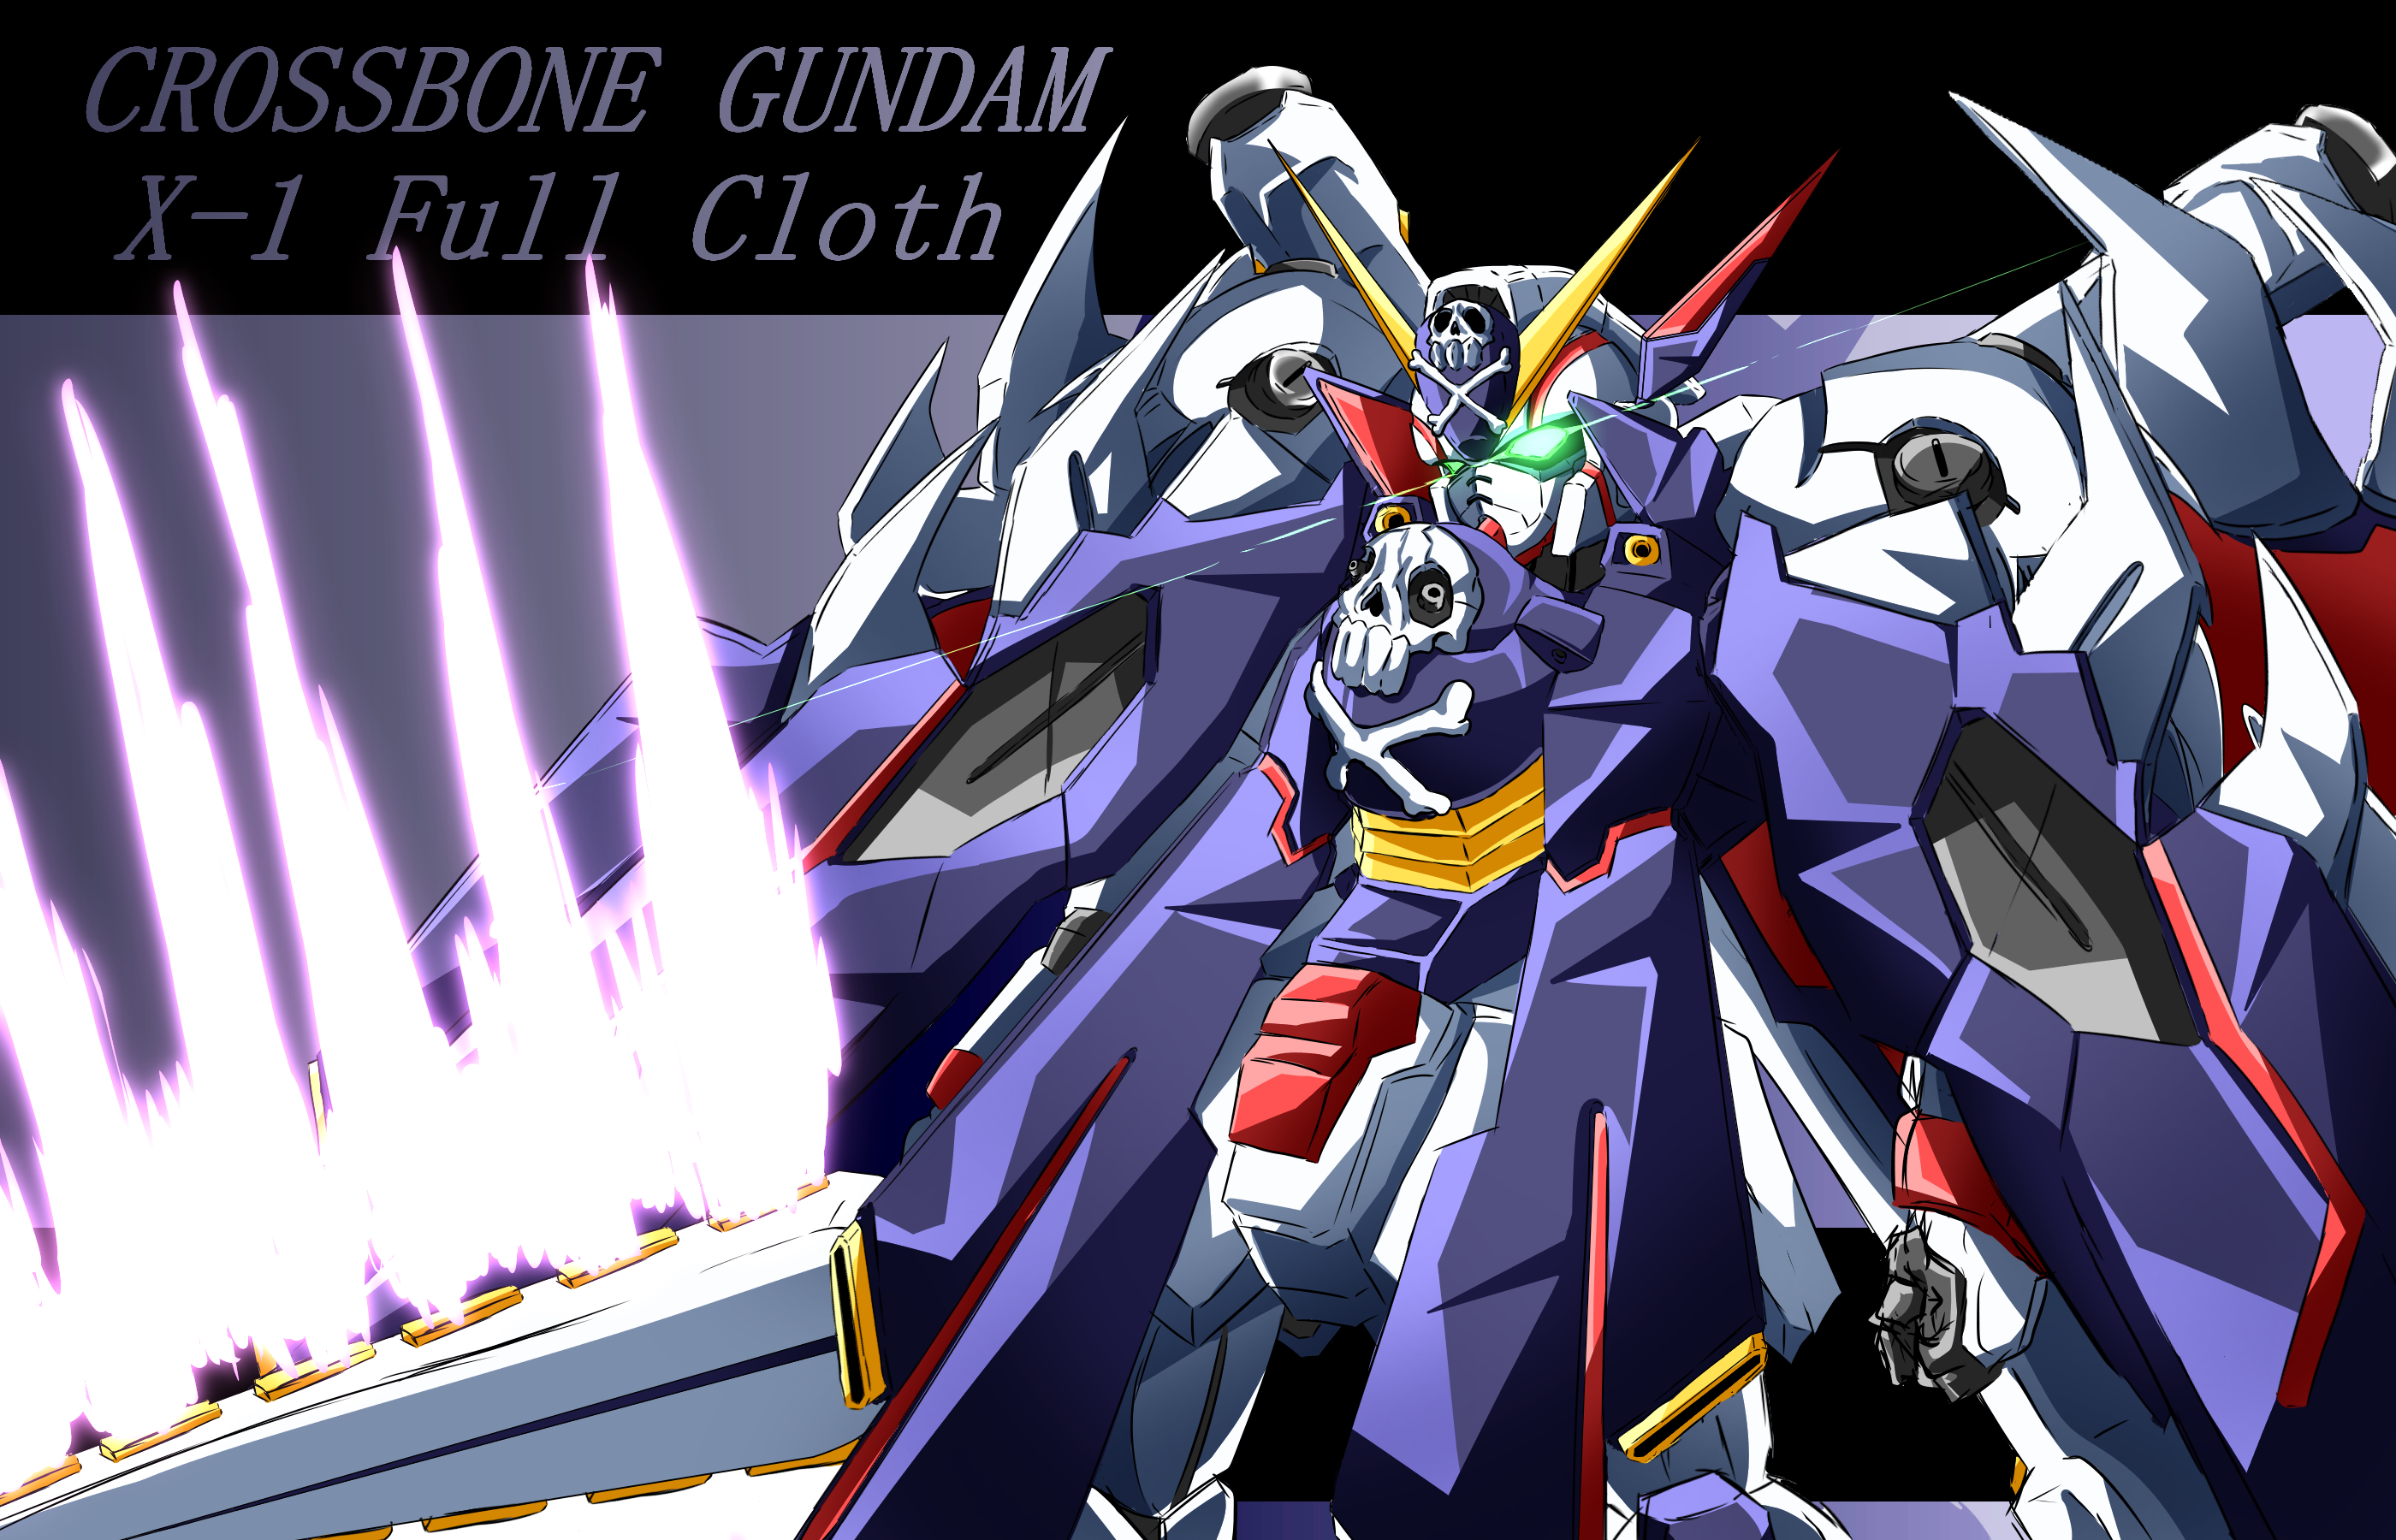 Anime 2800x1800 anime mechs Gundam Super Robot Taisen Mobile Suit Crossbone Gundam Crossbone Gundam X-1 Full Cloth artwork digital art fan art